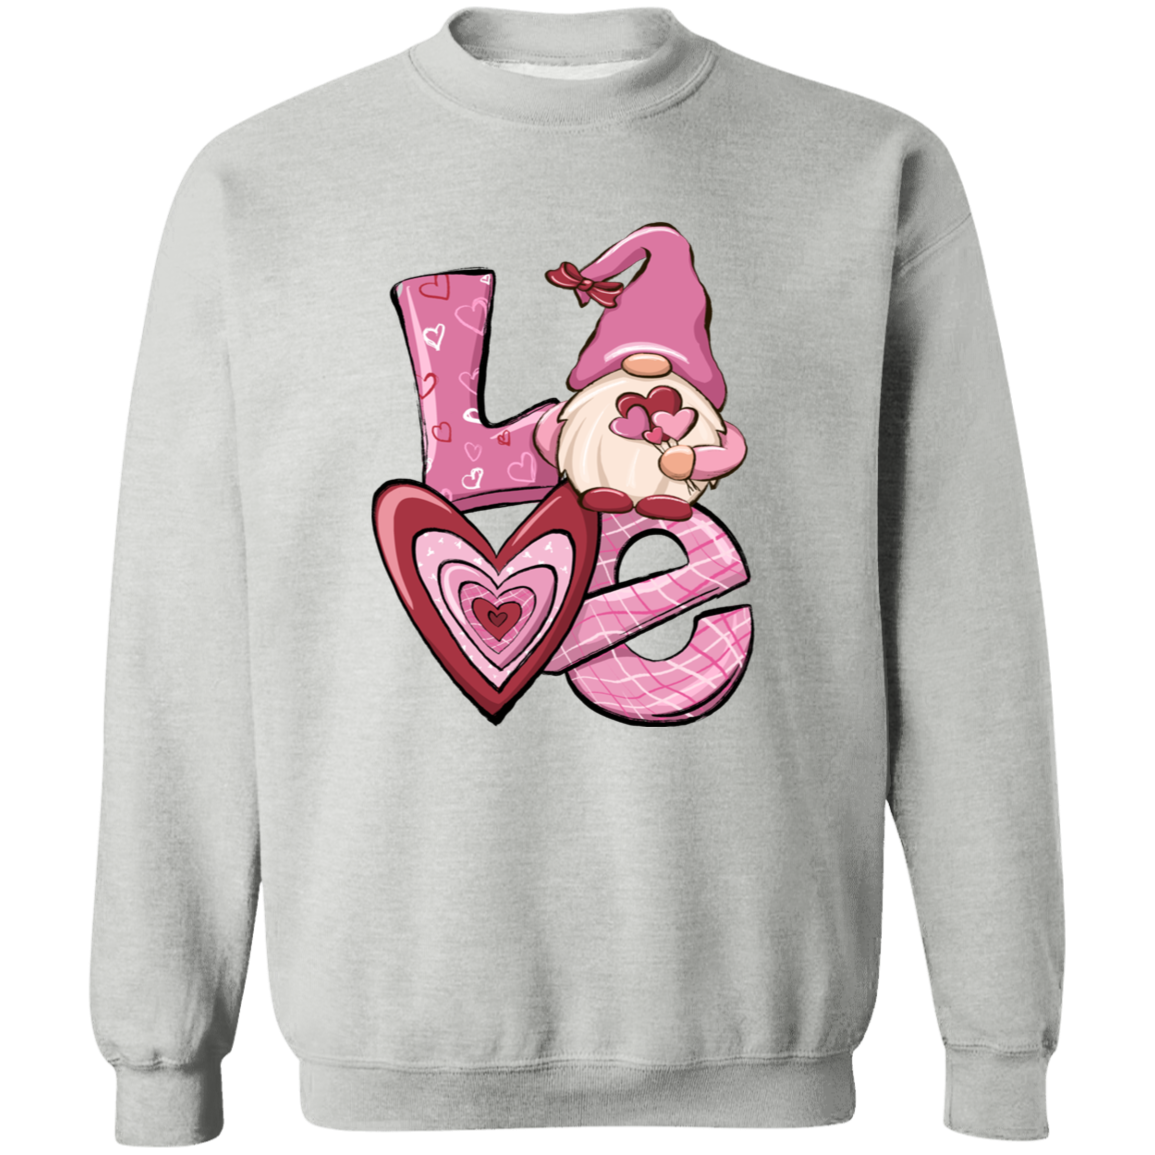 Valentine Love Unisex Sweatshirt